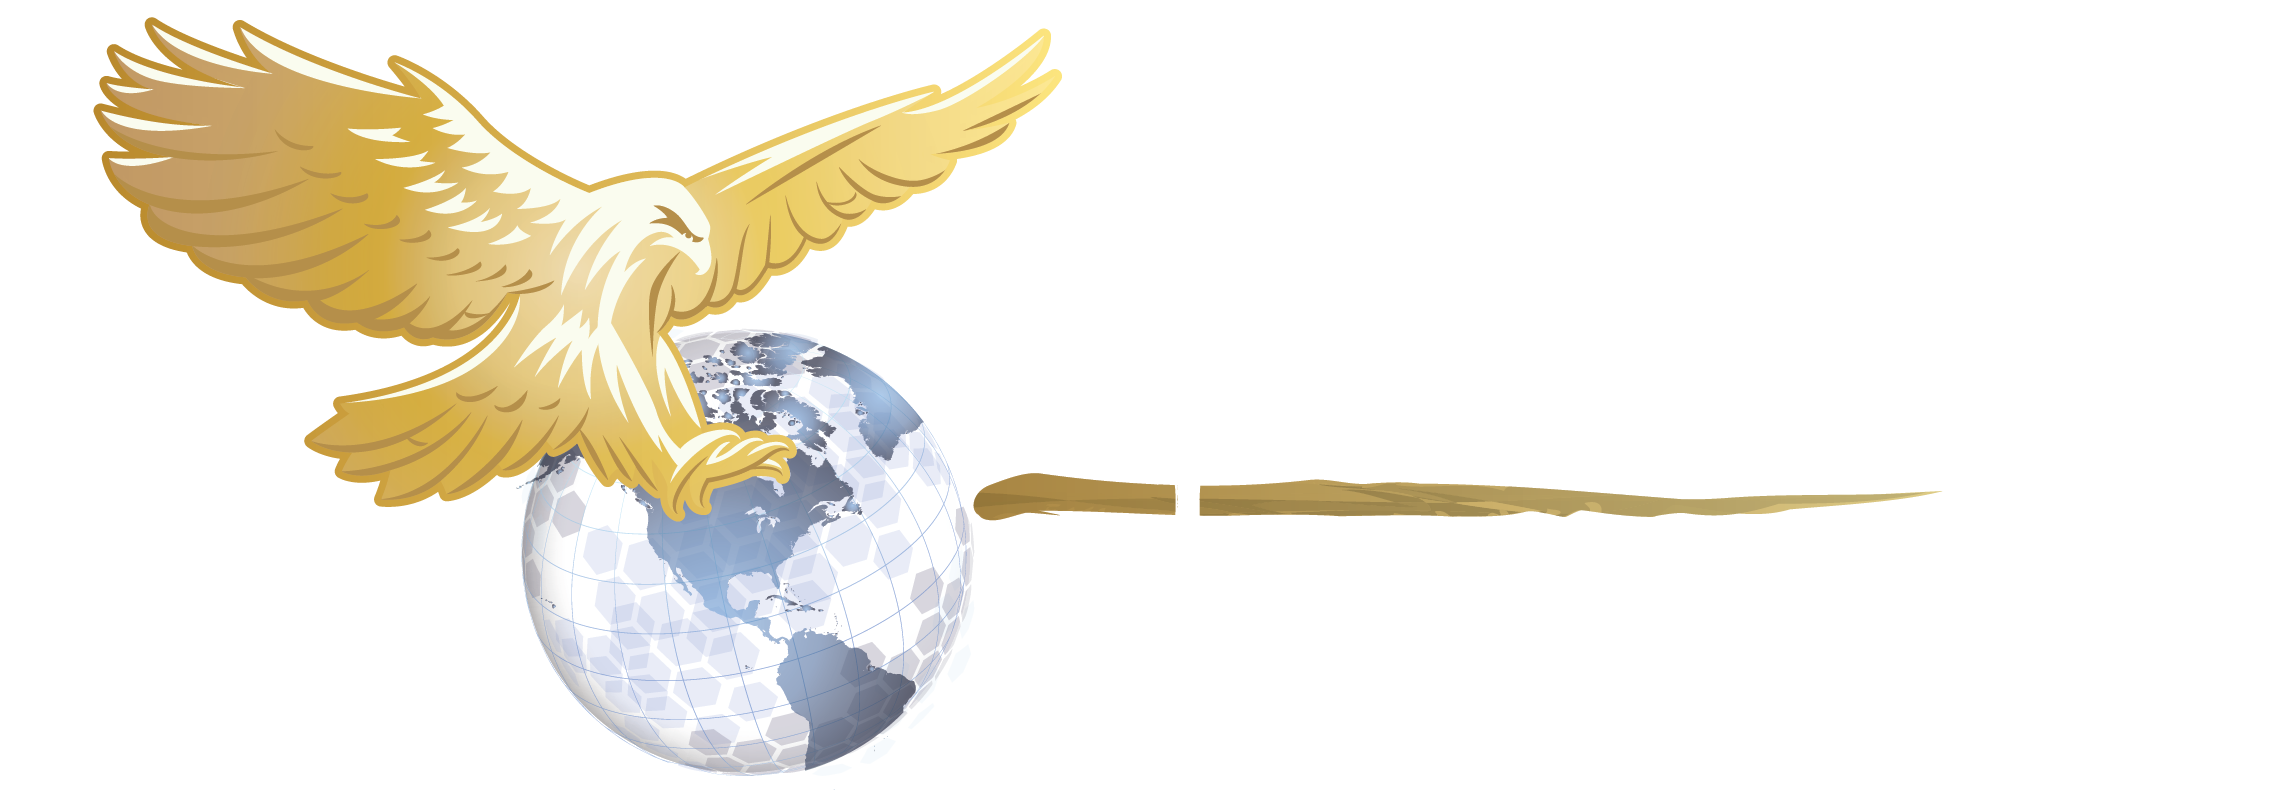 Bgesh | A Native American Owned Company